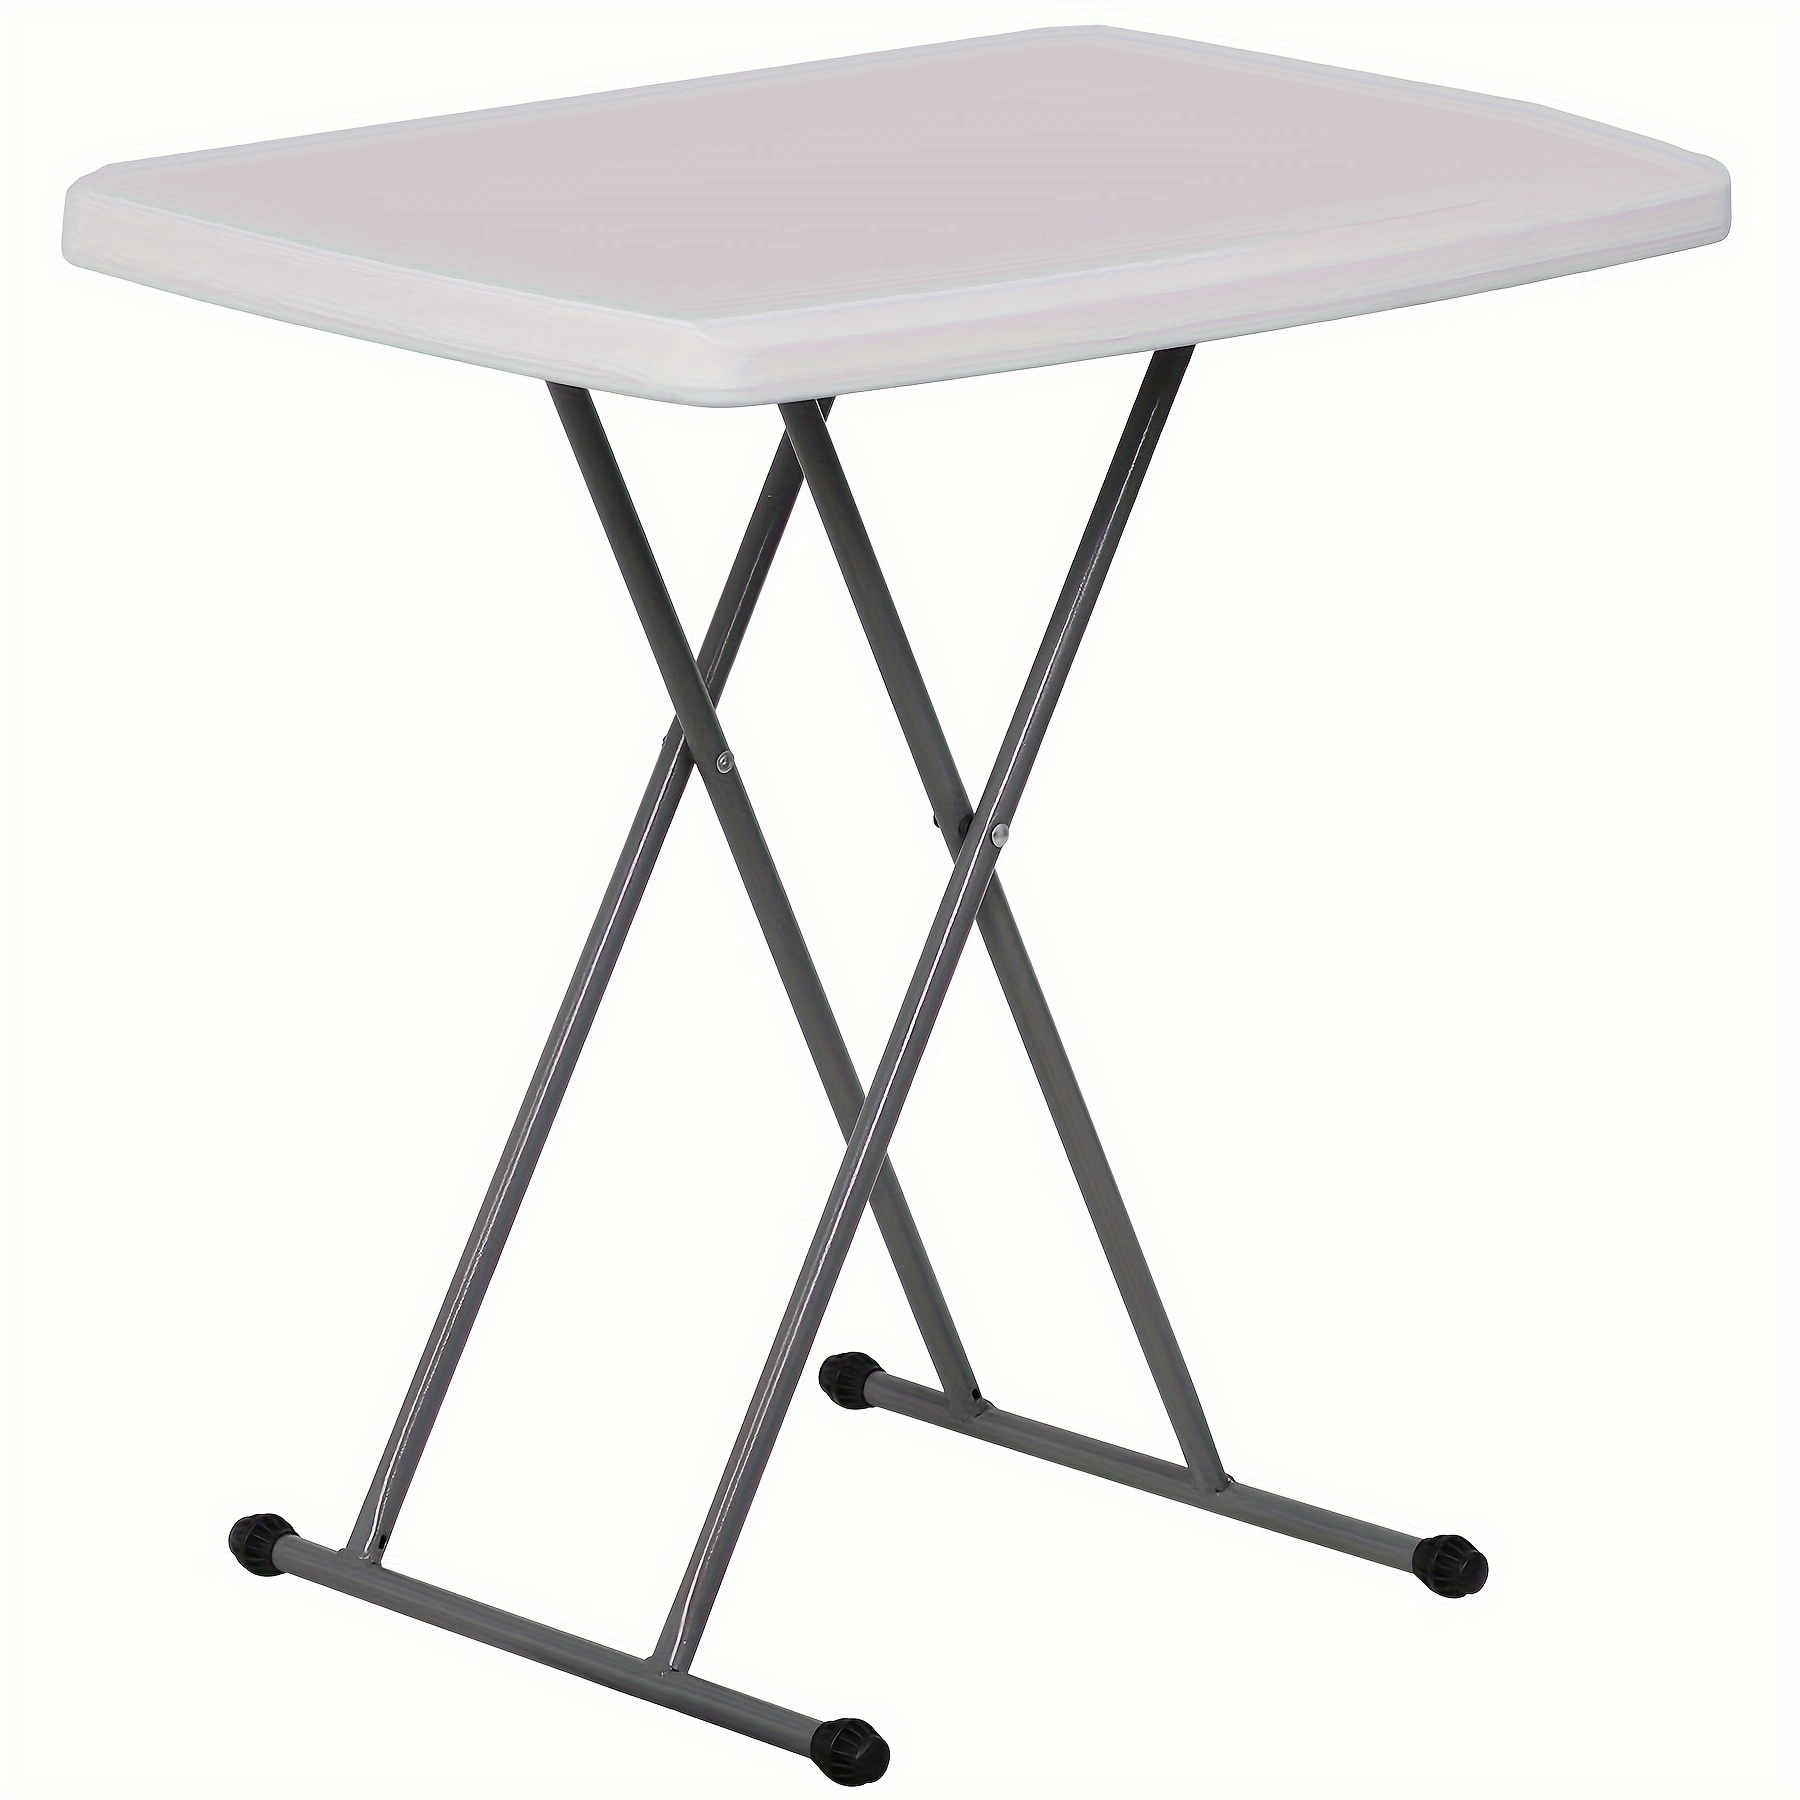 Folding Table mini, Shop online now!